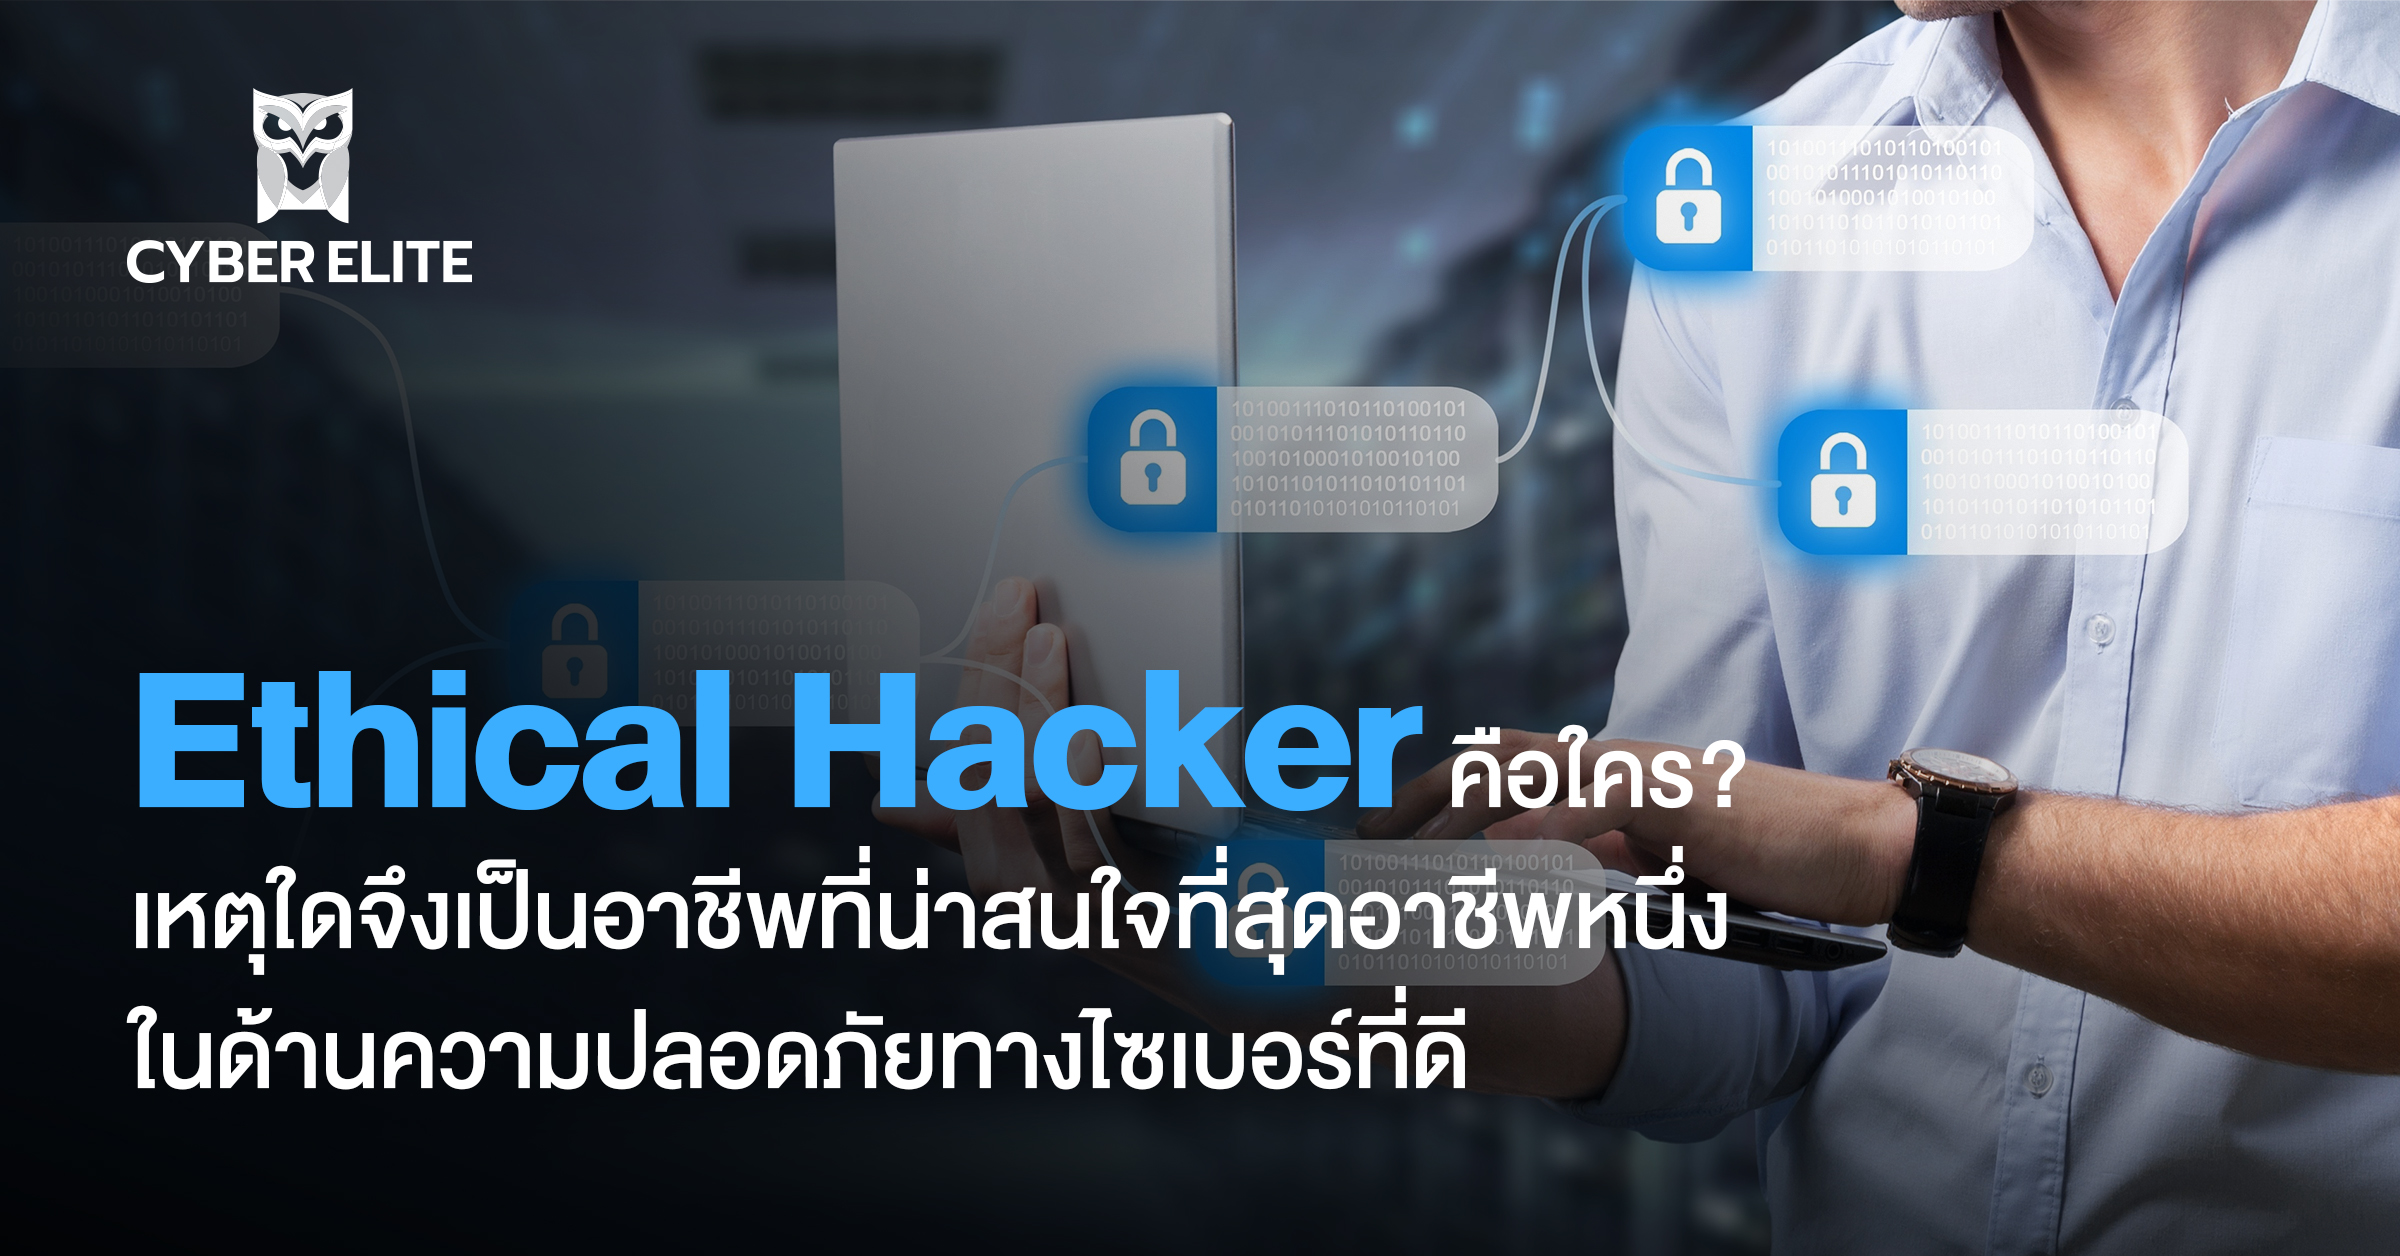 Ethical Hacker คือใคร? เหตุใดจึงเป็นอาชีพที่น่าสนใจที่สุดอาชีพหนึ่ง ในด้านความปลอดภัยทางไซเบอร์ที่ดี